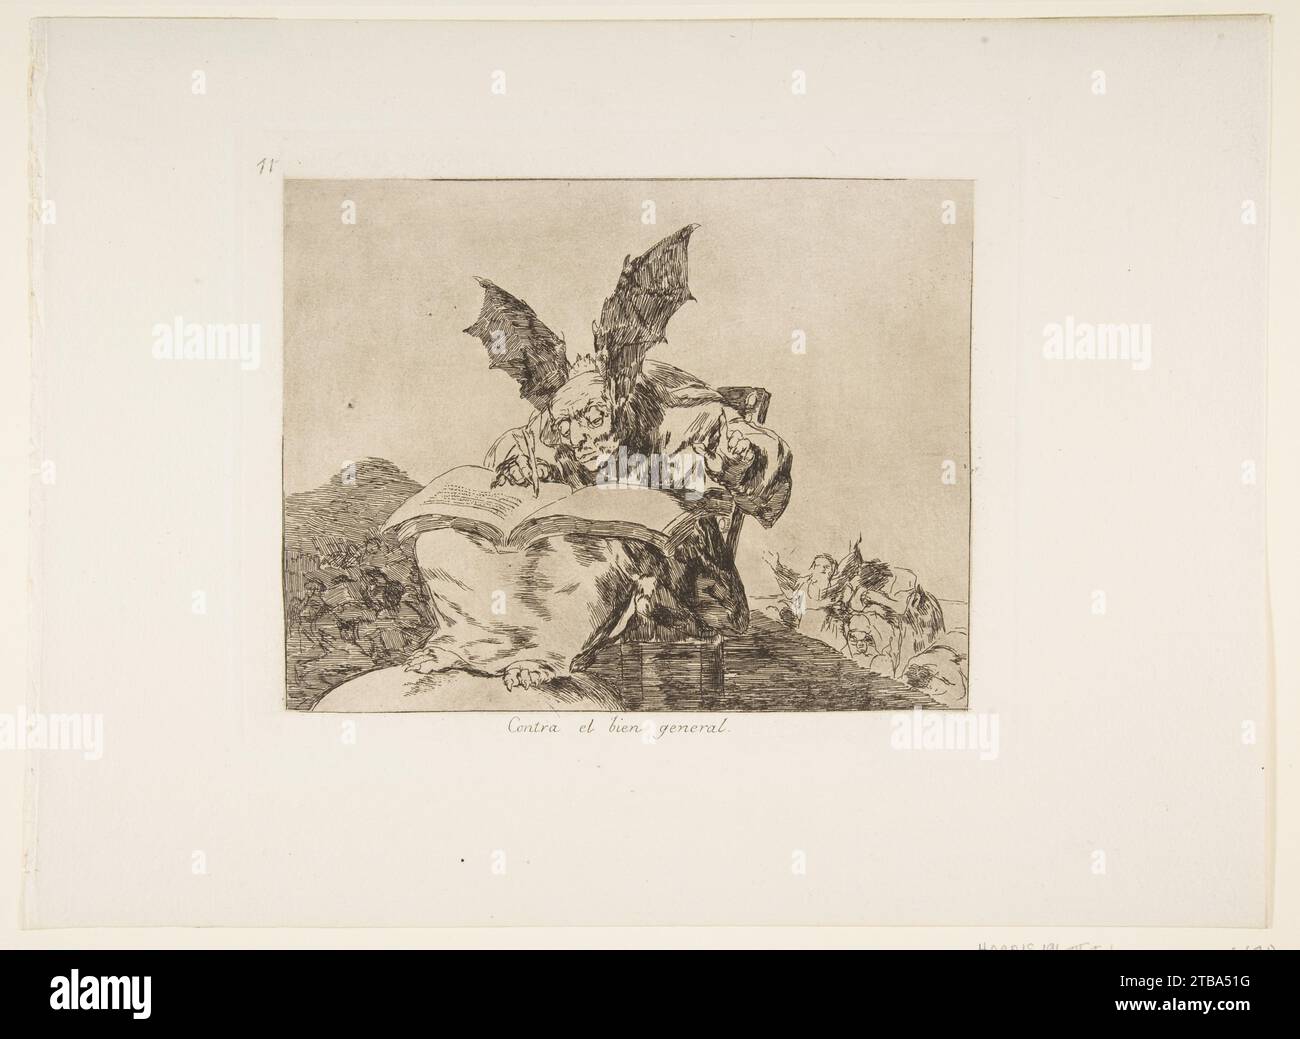 Plate 71 from "The Disasters of War" (Los Desastres de la Guerra): 'Against the common good' (Contra el bien general) 1922 by Goya (Francisco de Goya y Lucientes) Stock Photo